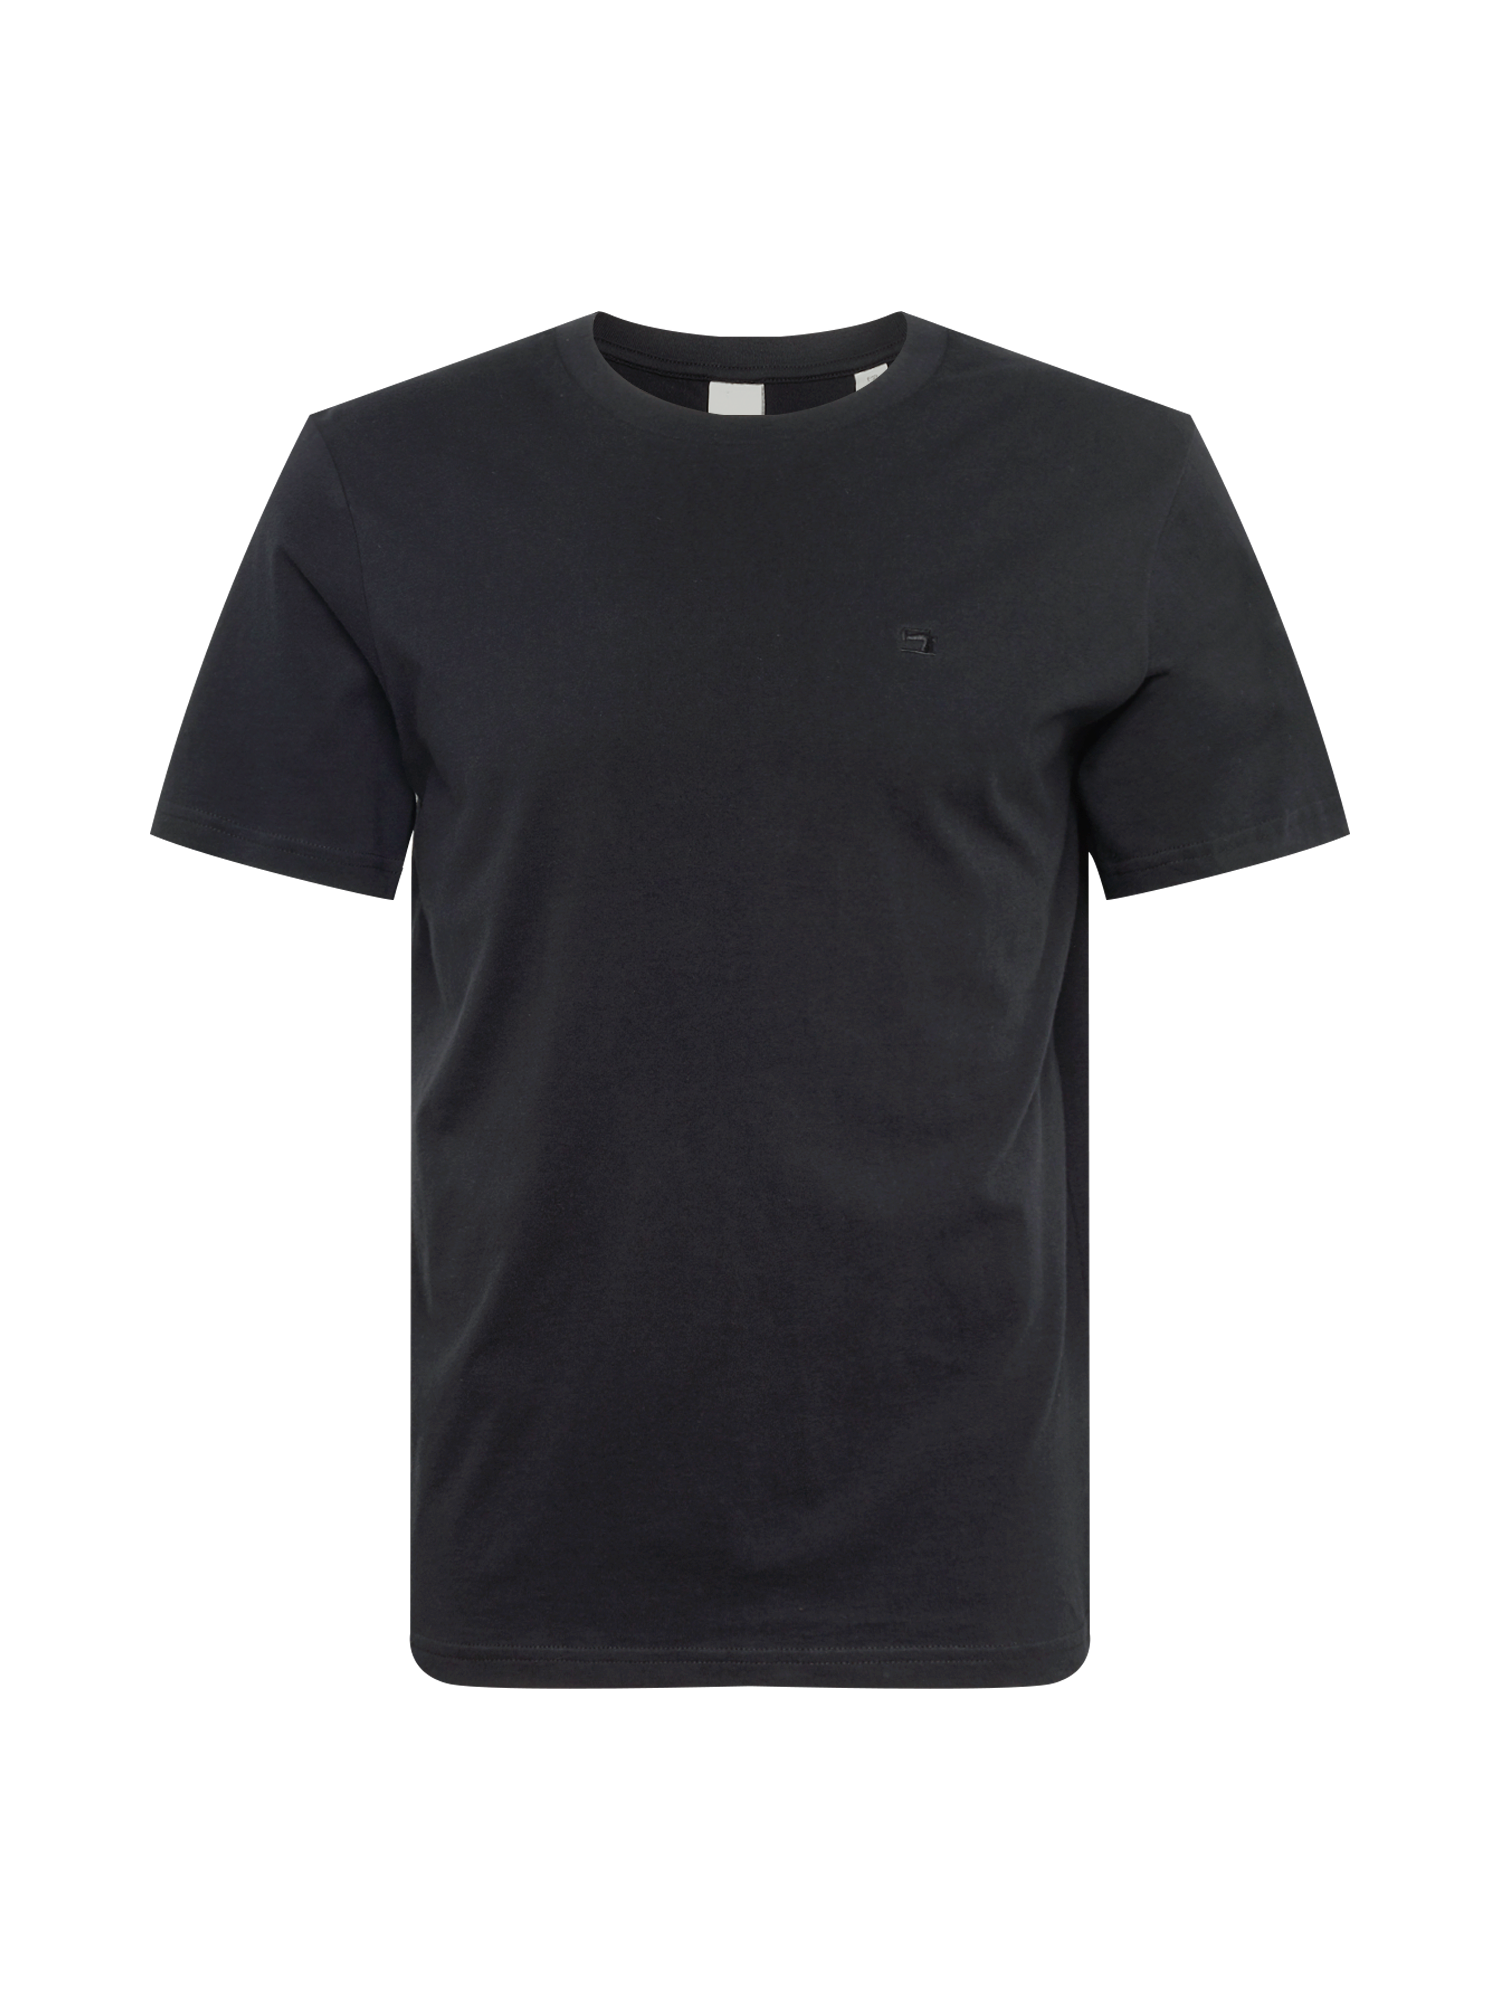 Odzież Mężczyźni SCOTCH & SODA Koszulka w kolorze Czarnym 